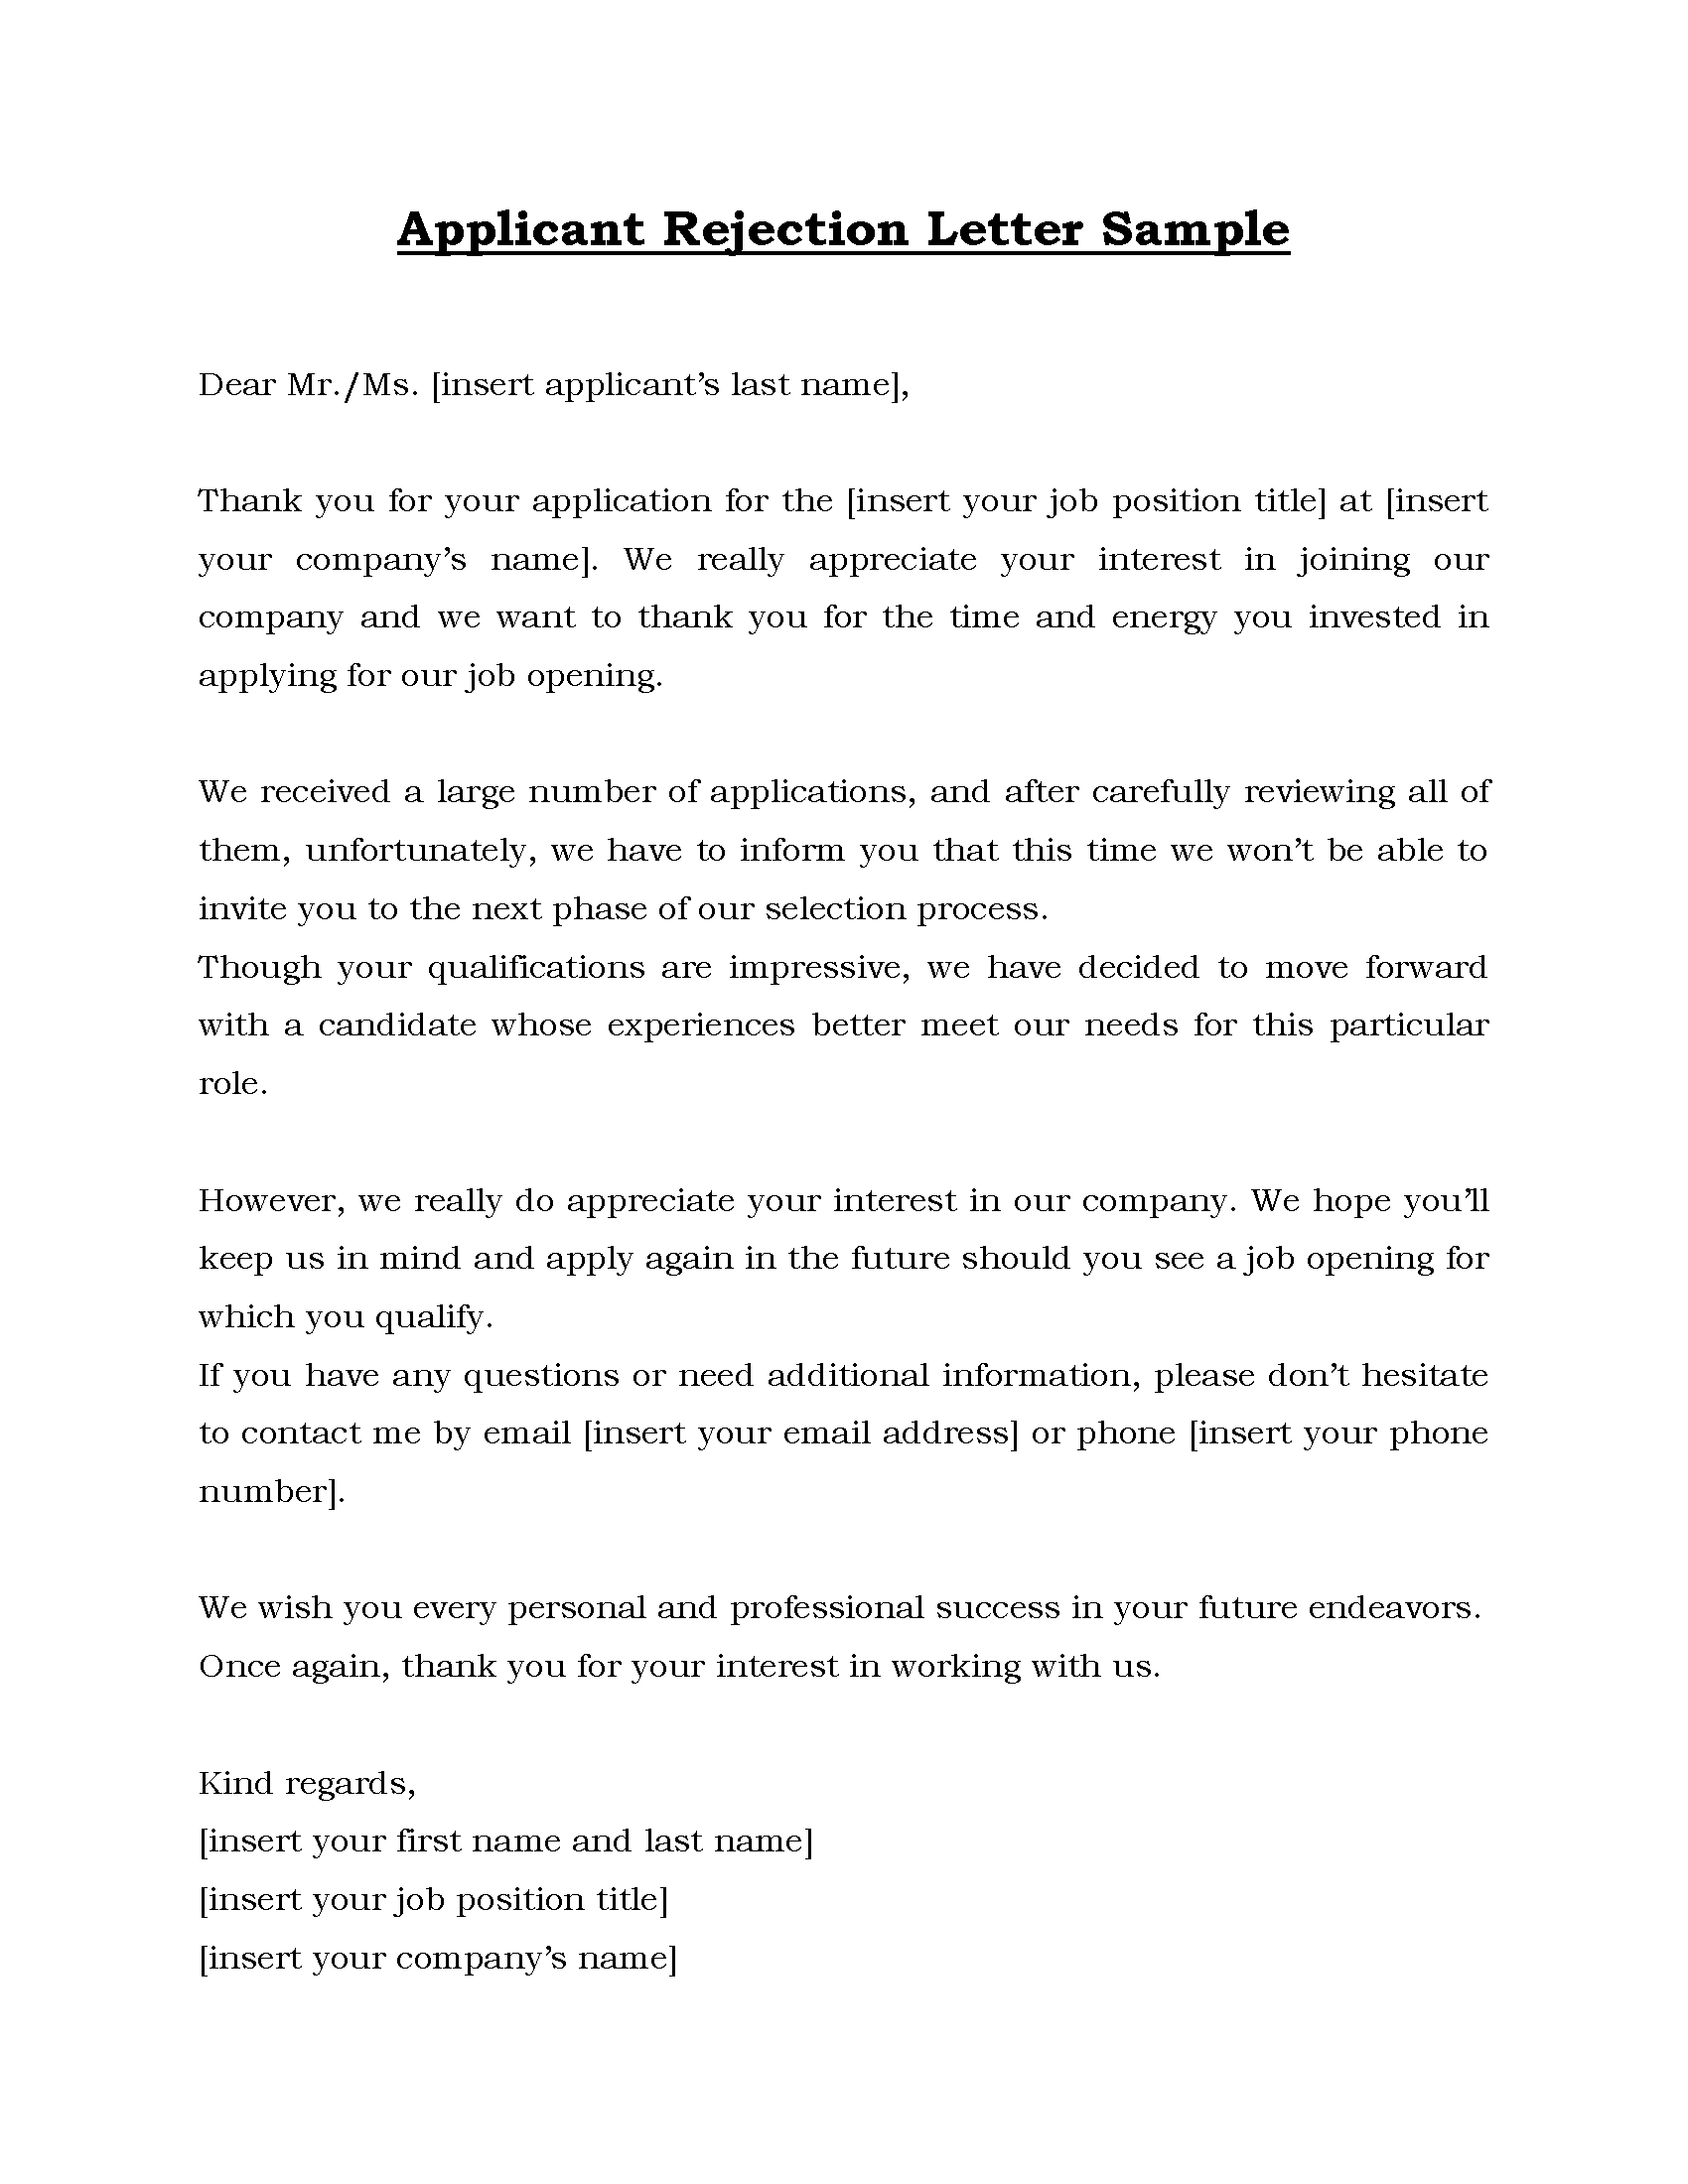 01- Applicant_Rejection_Letter_Sample